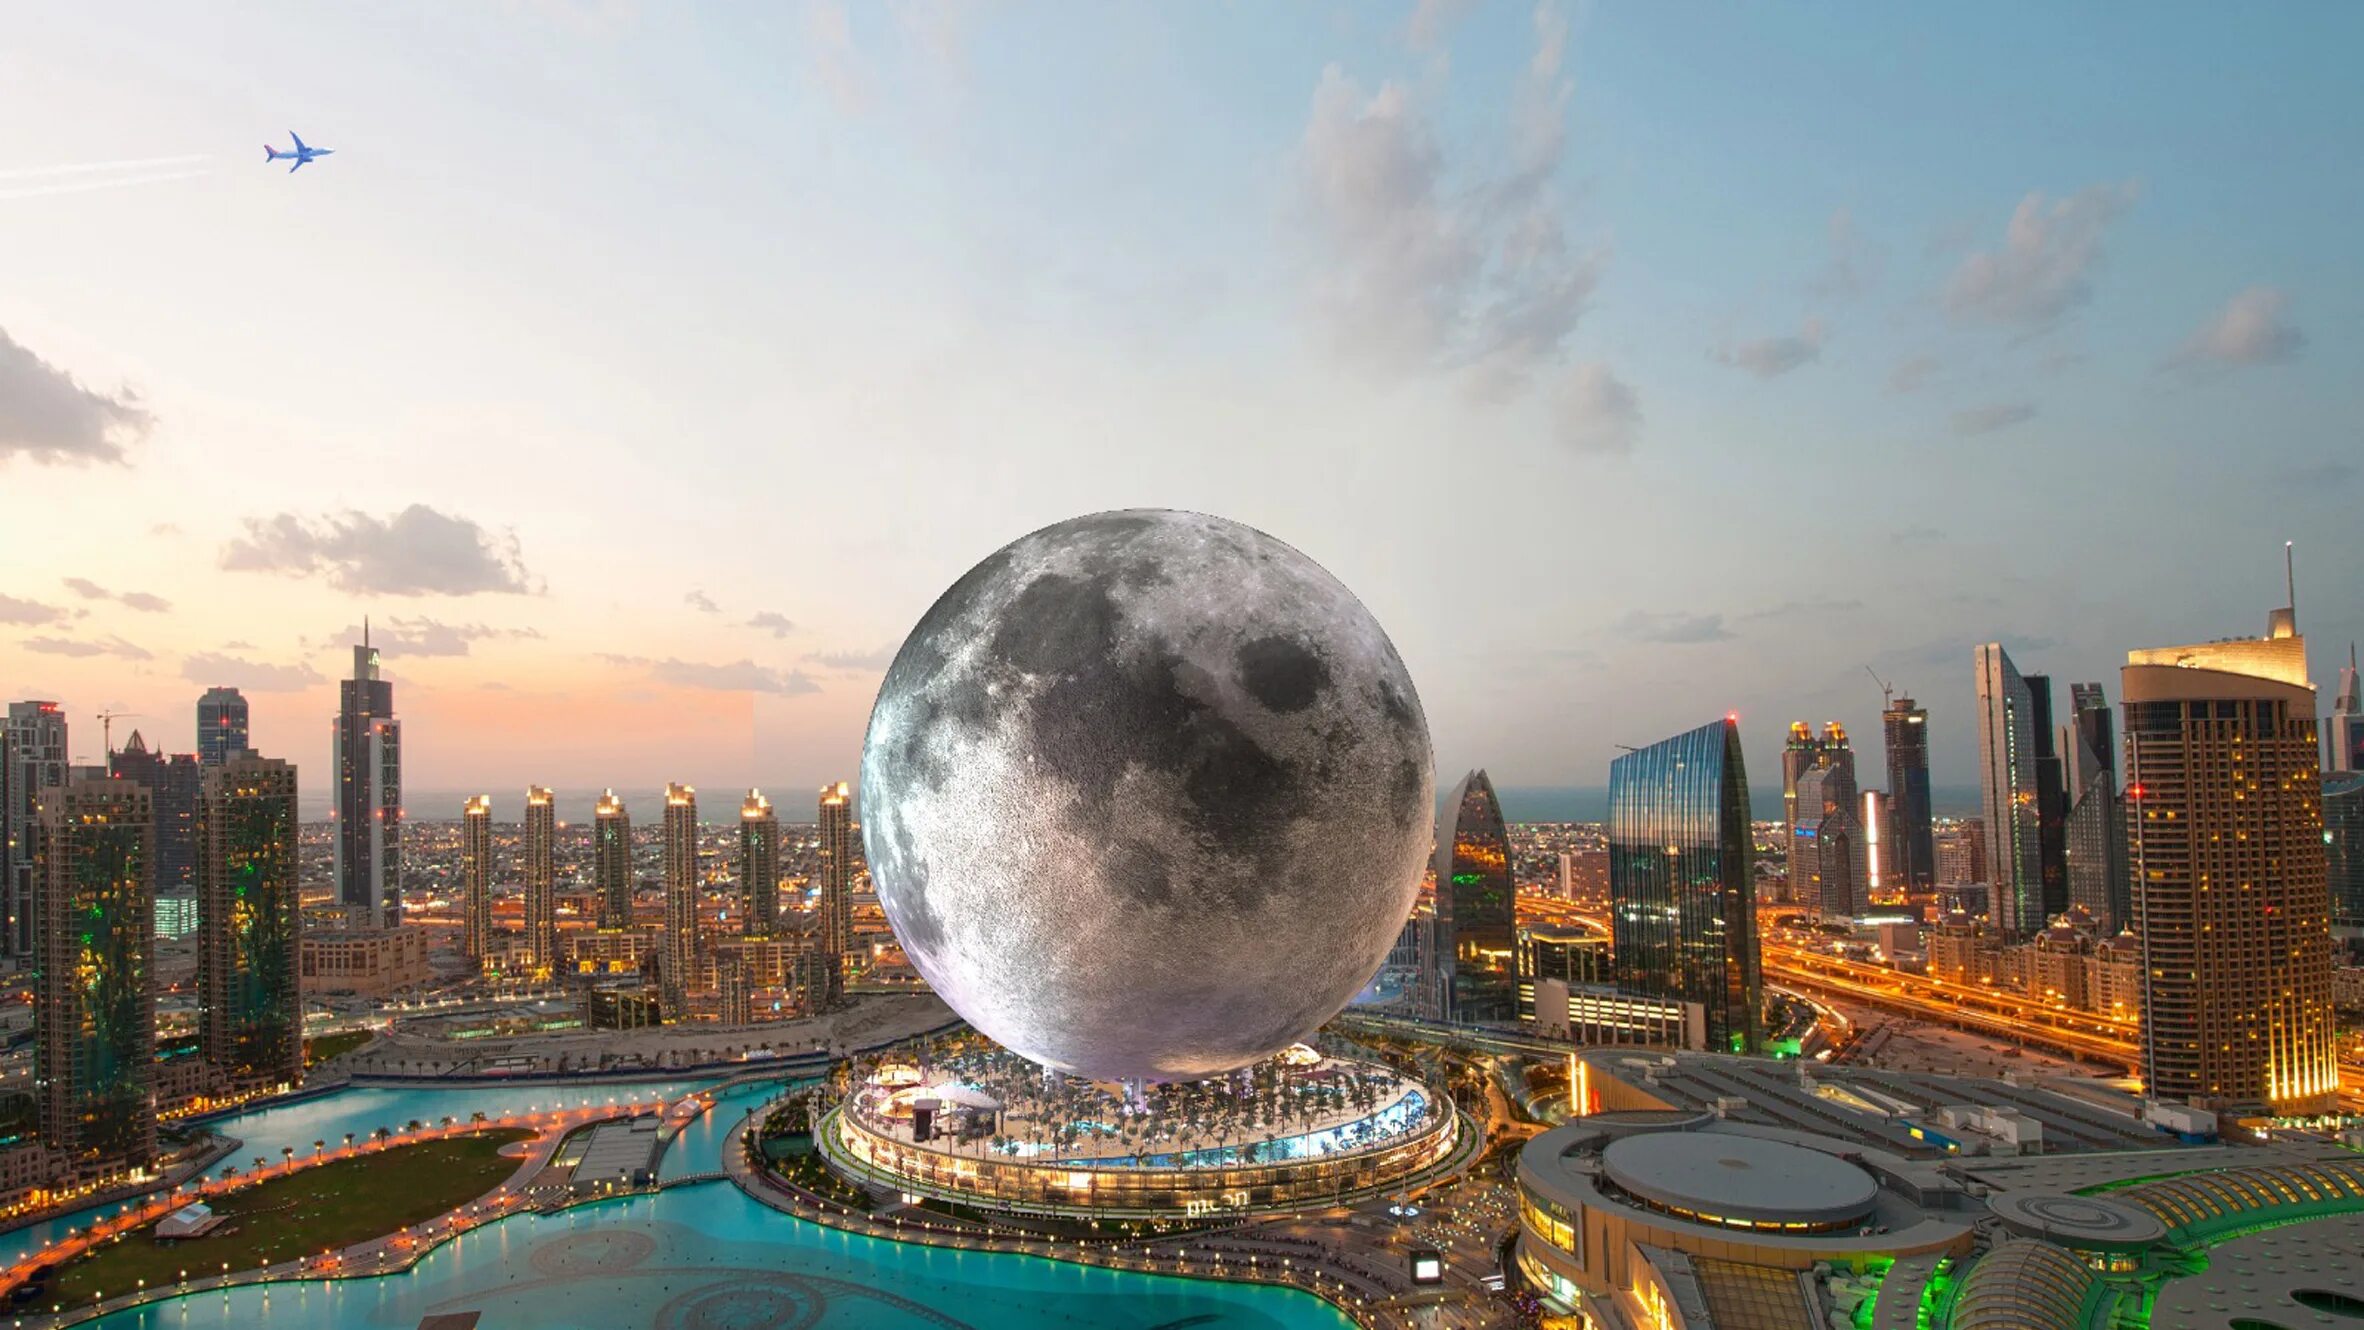 Мун Тауэр Дубай. Абу Даби Бурдж Халифа. Moon Dubai отель. Небоскреб-полумесяц, Дубай, ОАЭ.. Lunar world